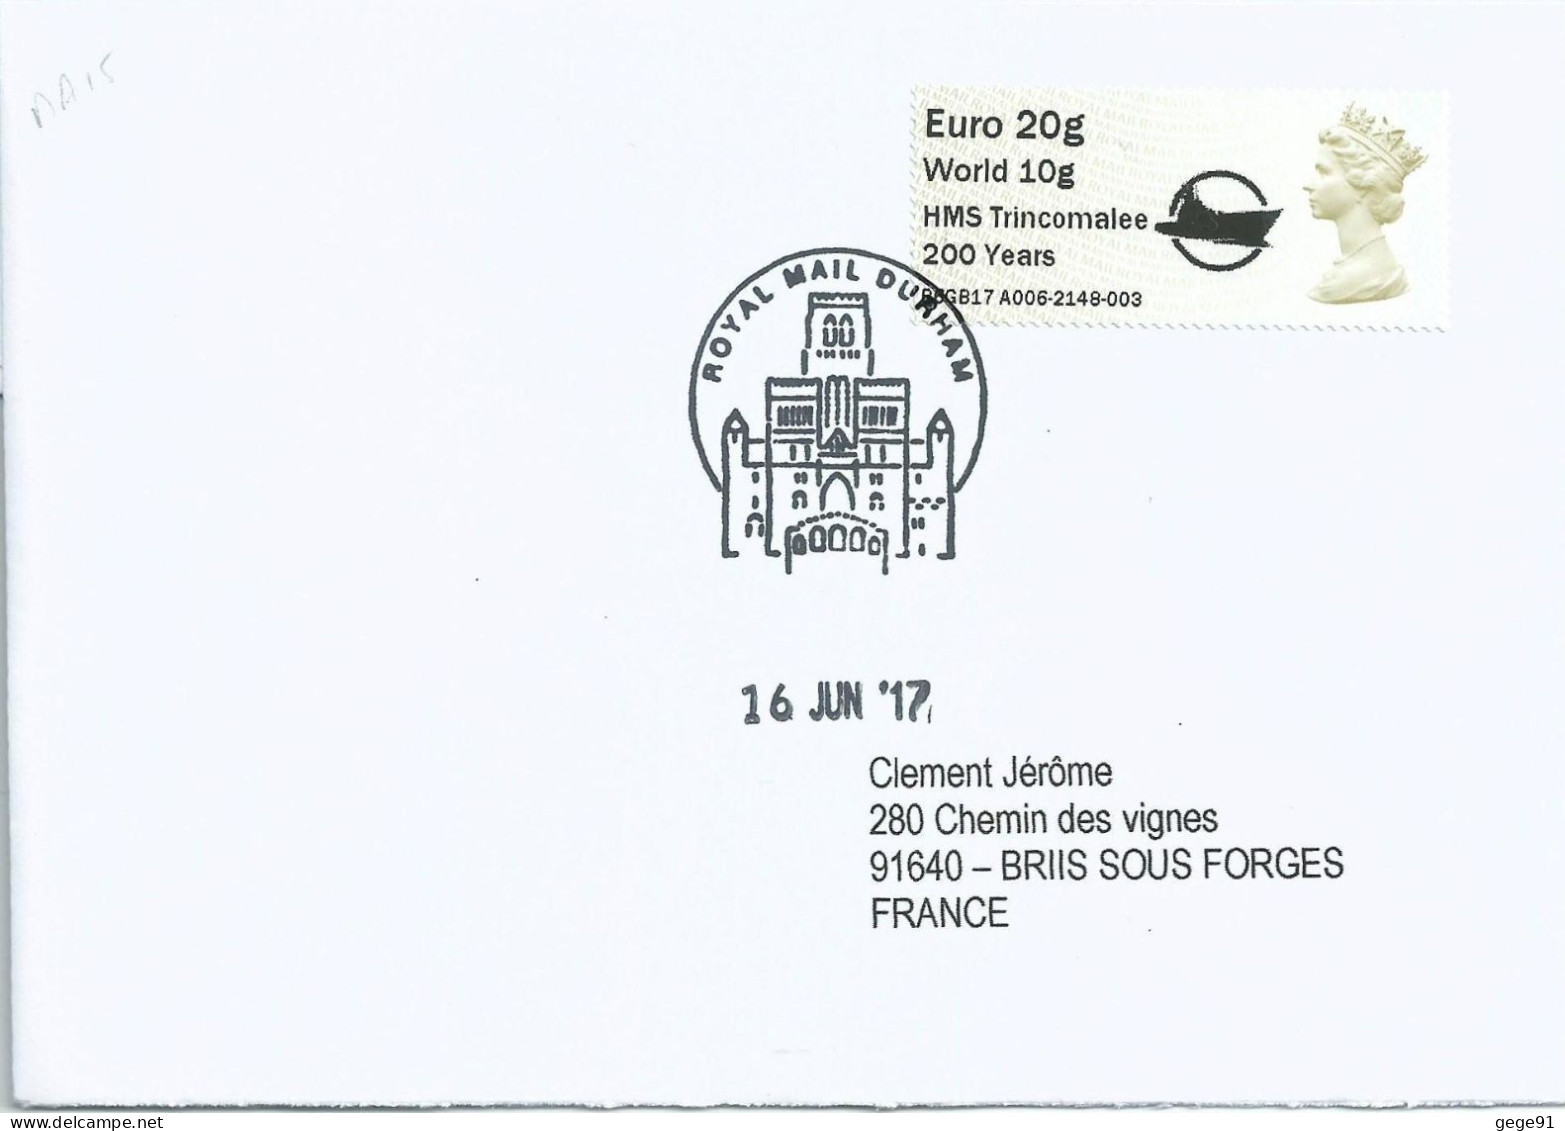 Vignette De Distributeur - ATM - IAR - Machin - QEII - 200 Ans Du HMS Trincomalee - Post & Go Stamps